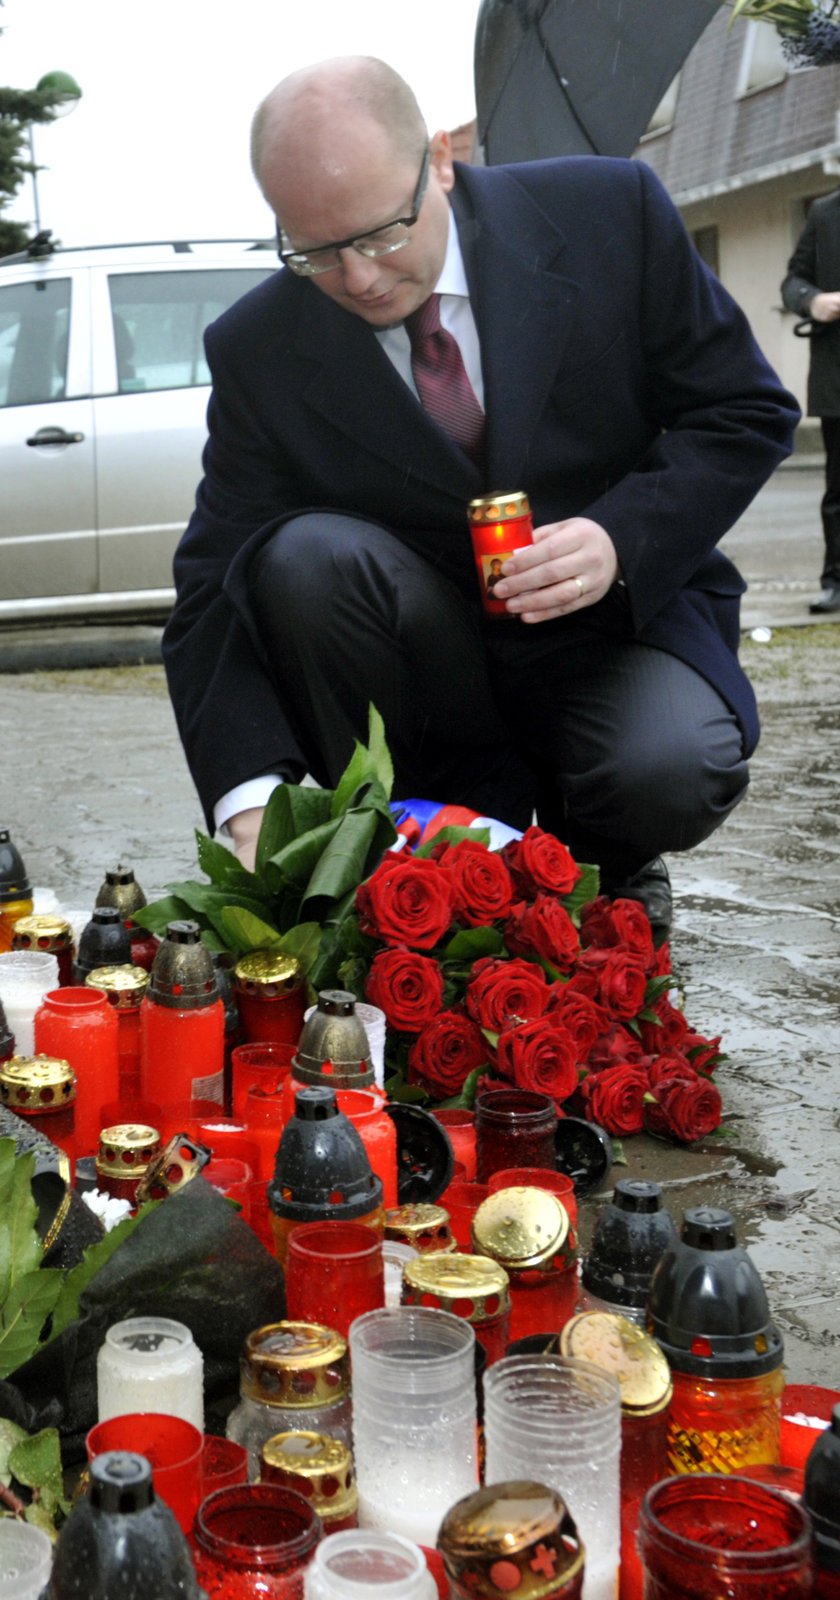 Premiér Sobotka uctil památku obětí masakru v Uherském Brodě.